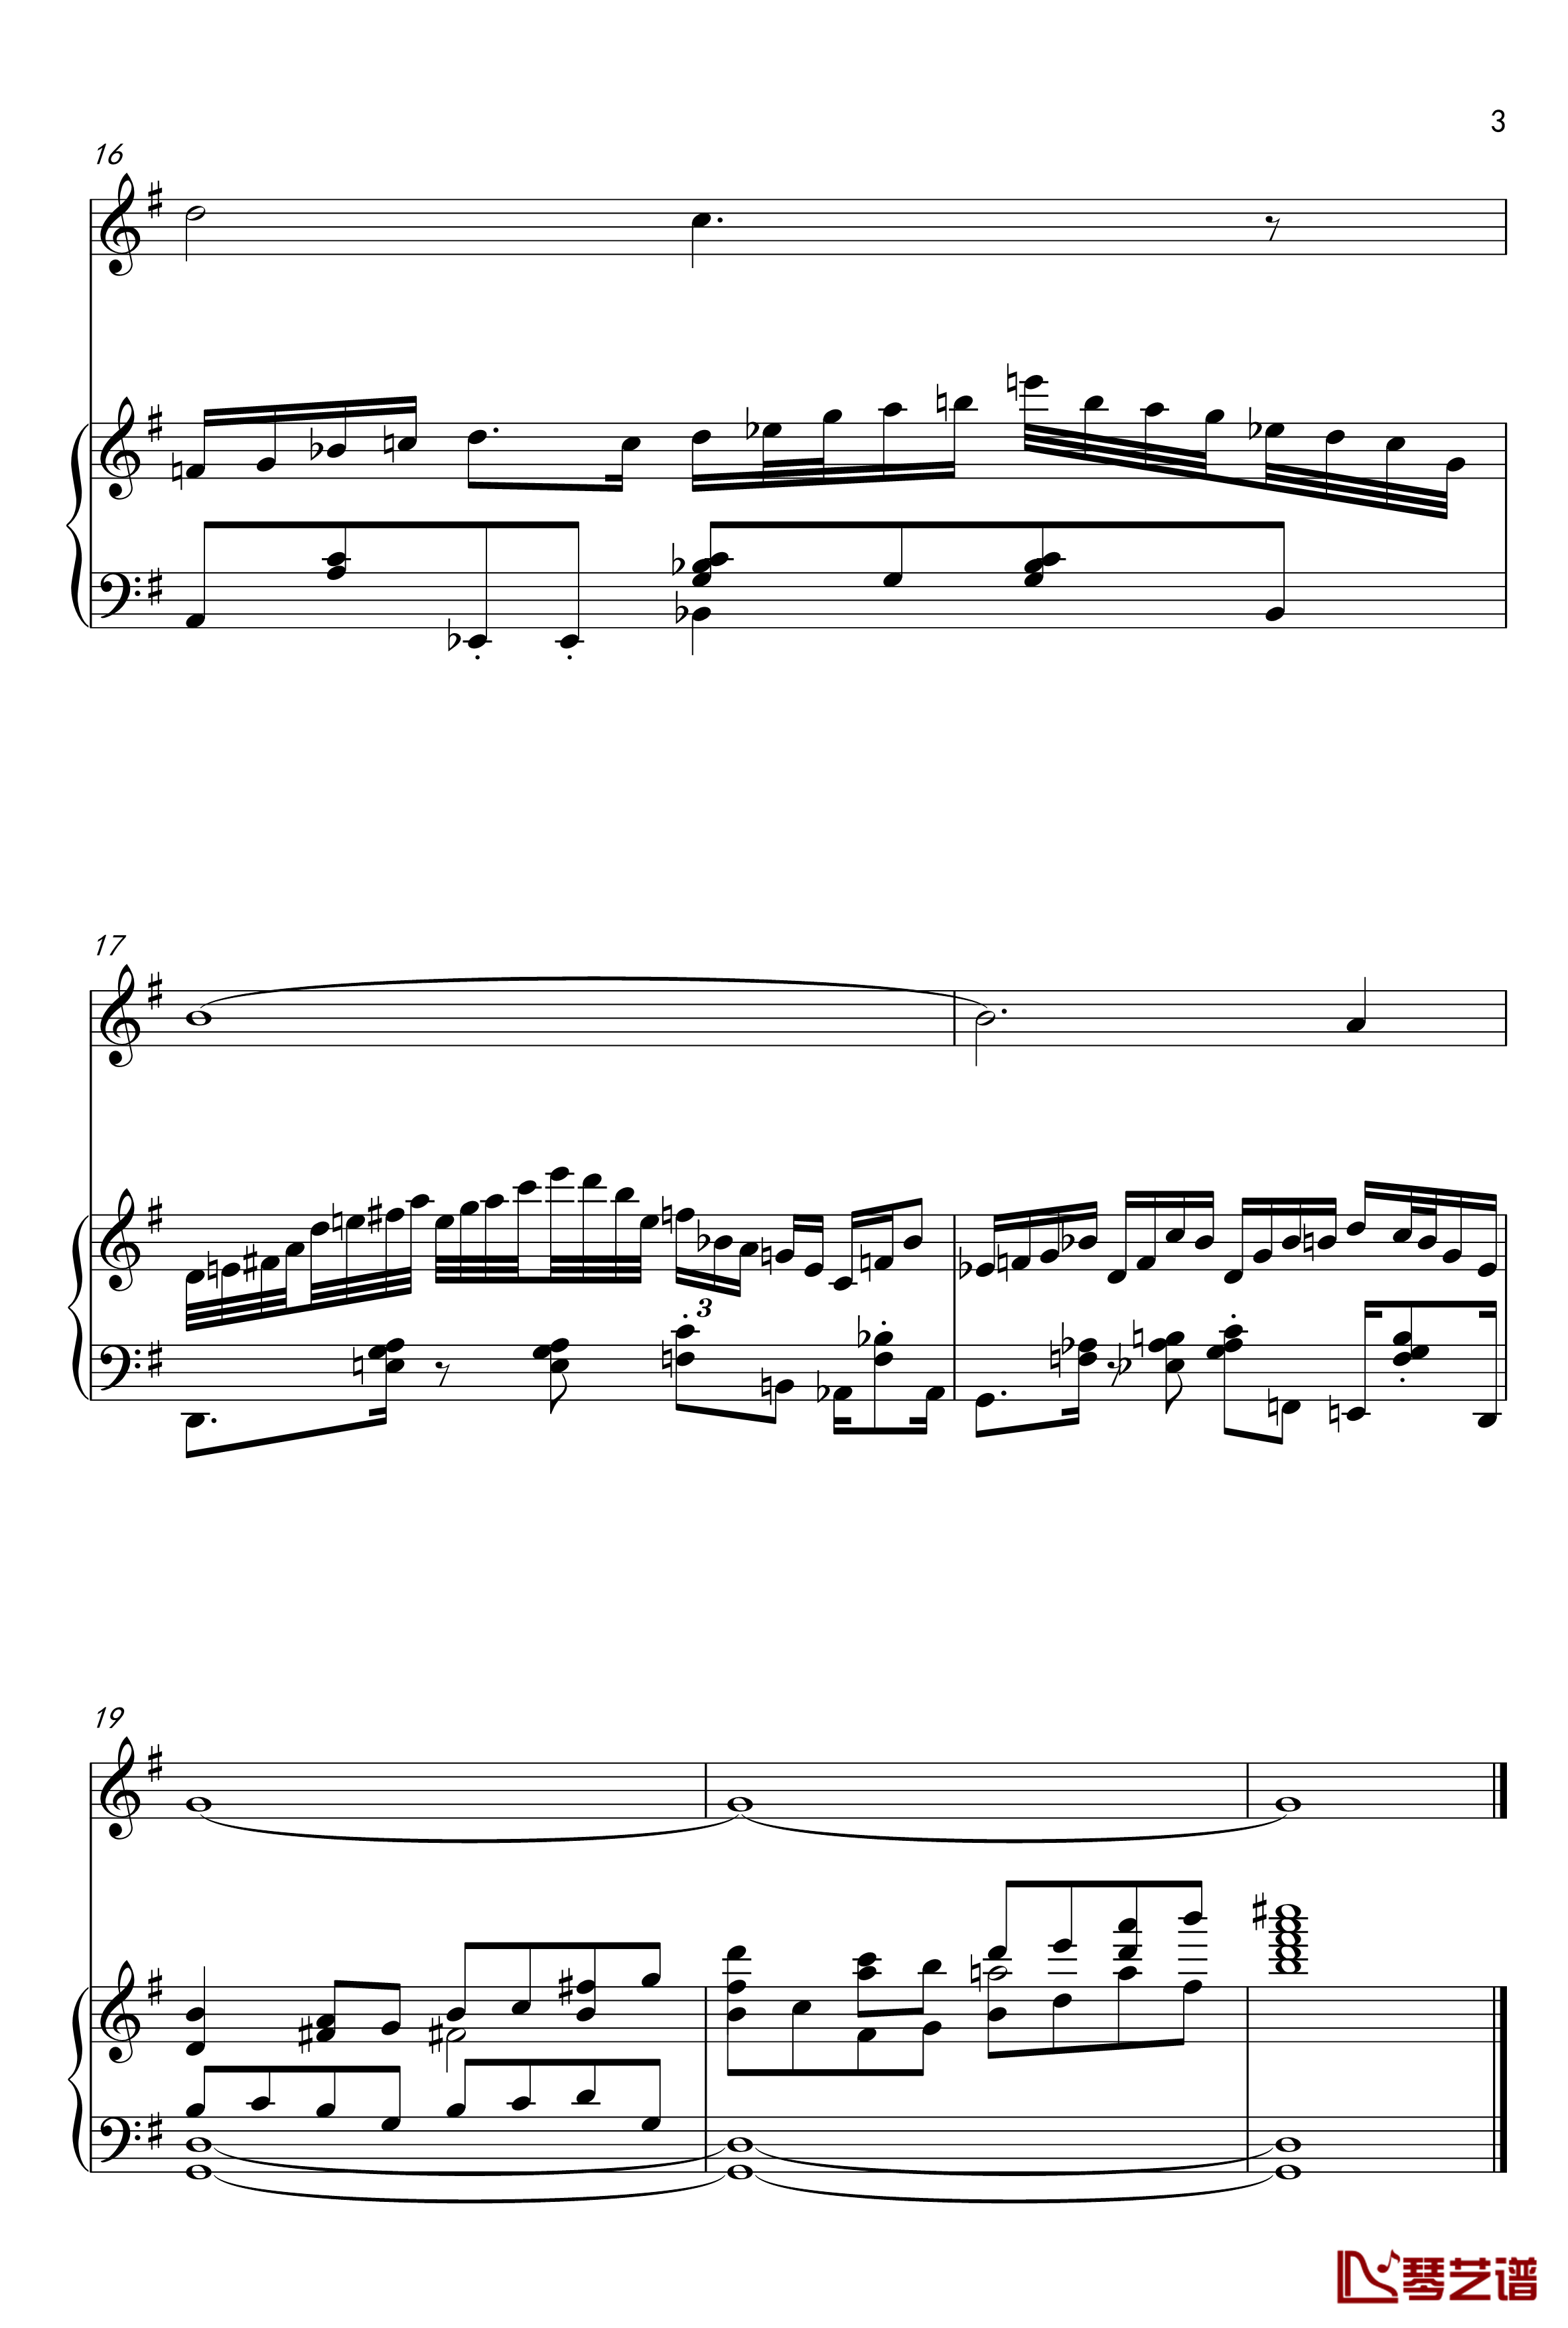 膜膜鸽钢琴谱-皮皮蛤3